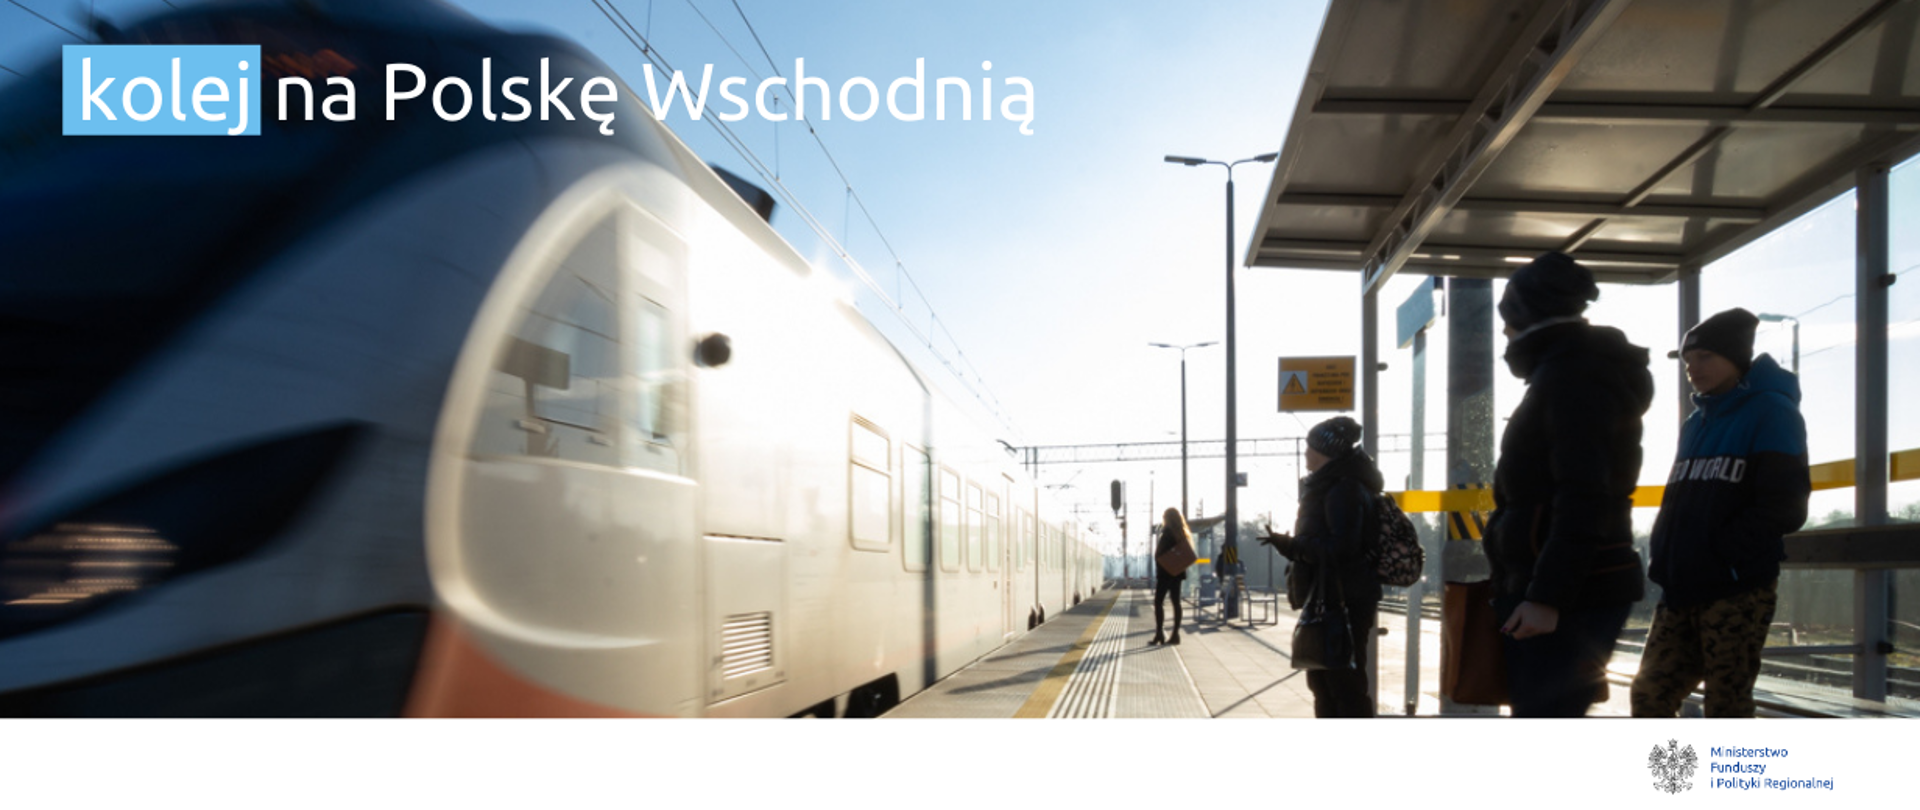 Zdjęcie peronu, widoczny pociąg i pasażerowie czekający na przystanku. Na górze napis: kolej na Polskę Wschodnią. Na dole logo Ministerstwa Funduszy i Polityki Regionalnej